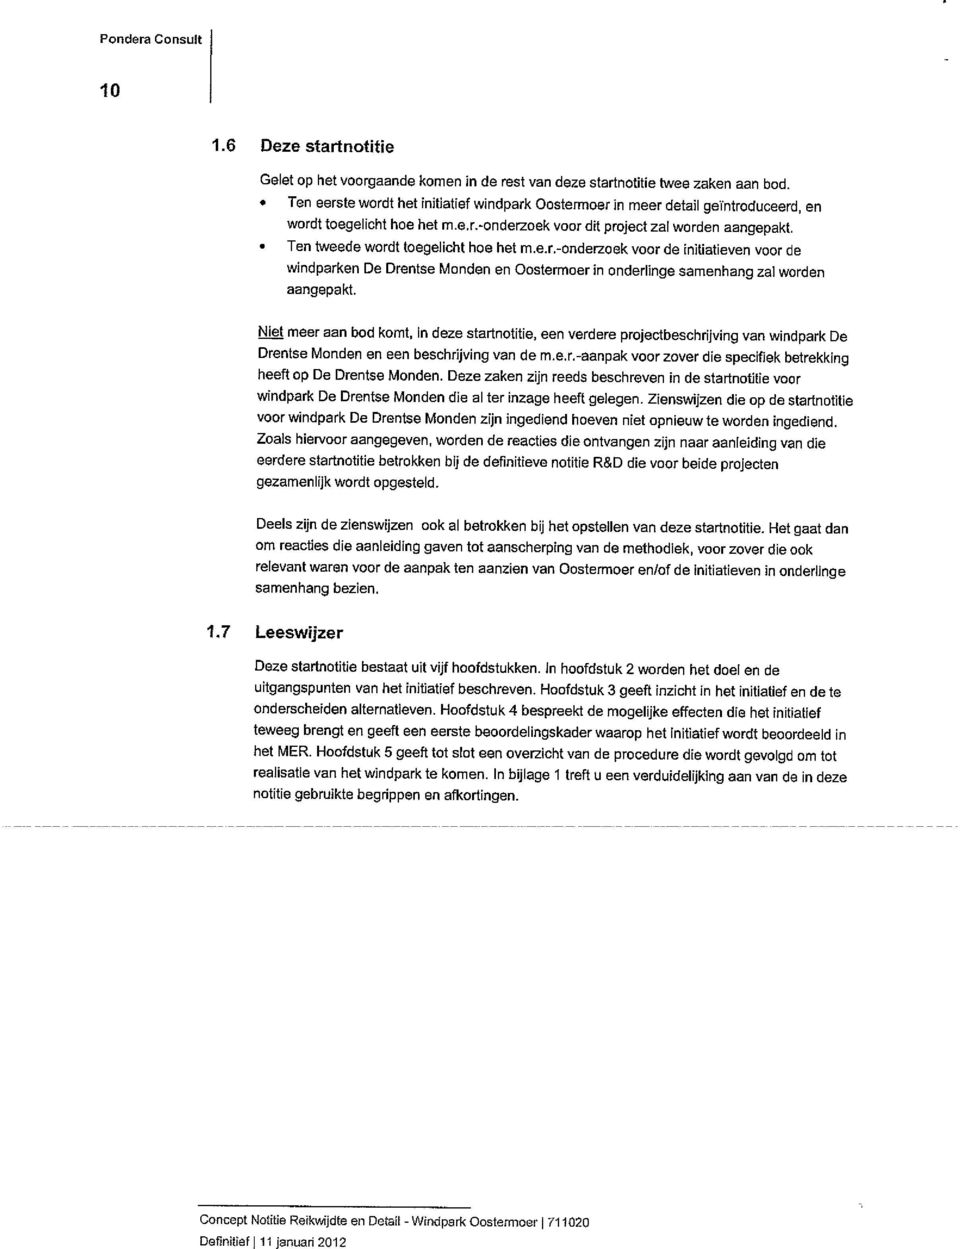 Ten tweede wordt toegelicht hoe het m.e.r.-onderzoek voor de initiatieven voor de windparken De Drentse Monden en Oostermoer in onderlinge samenhang zal worden aangepakt.